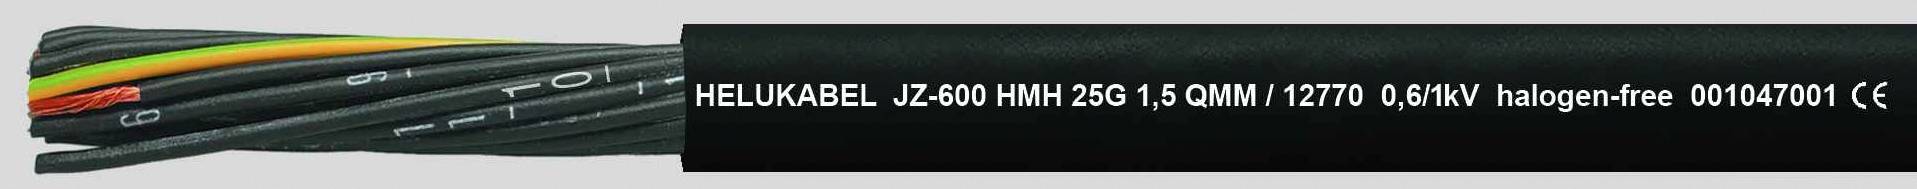 HELUKABEL JZ-600 HMH Steuerleitung 5 G 2.50 mm² Schwarz 12776-1000 1000 m